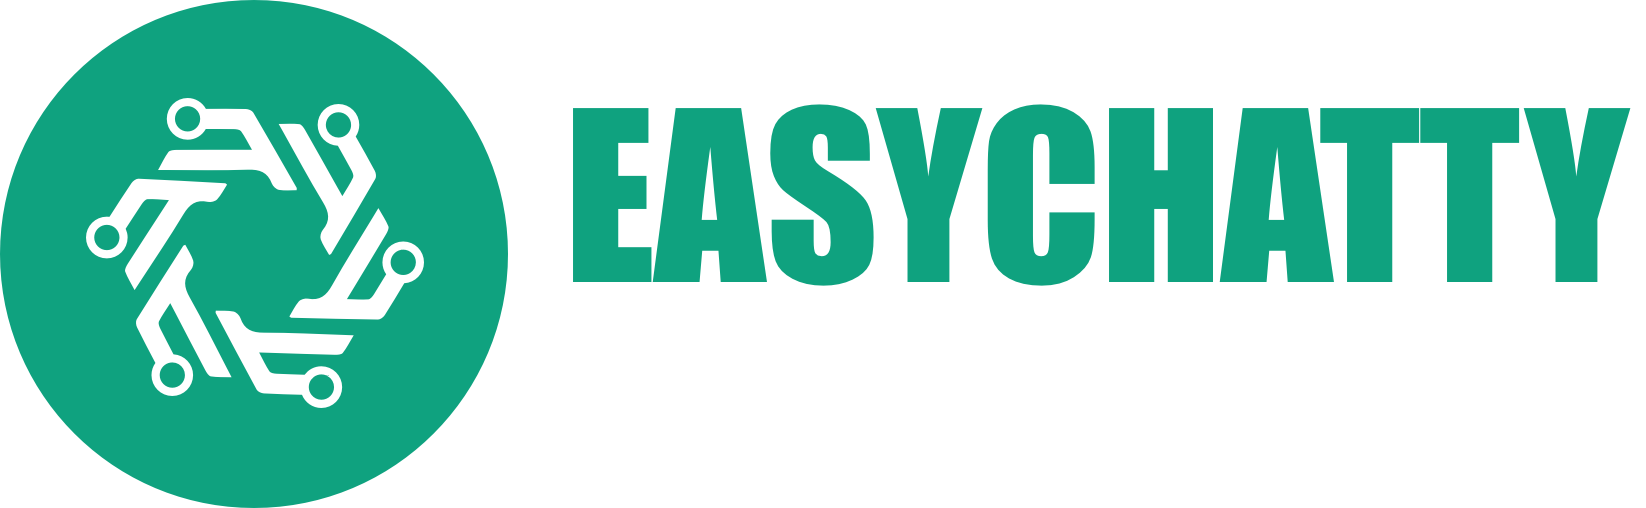 logo_easychatty